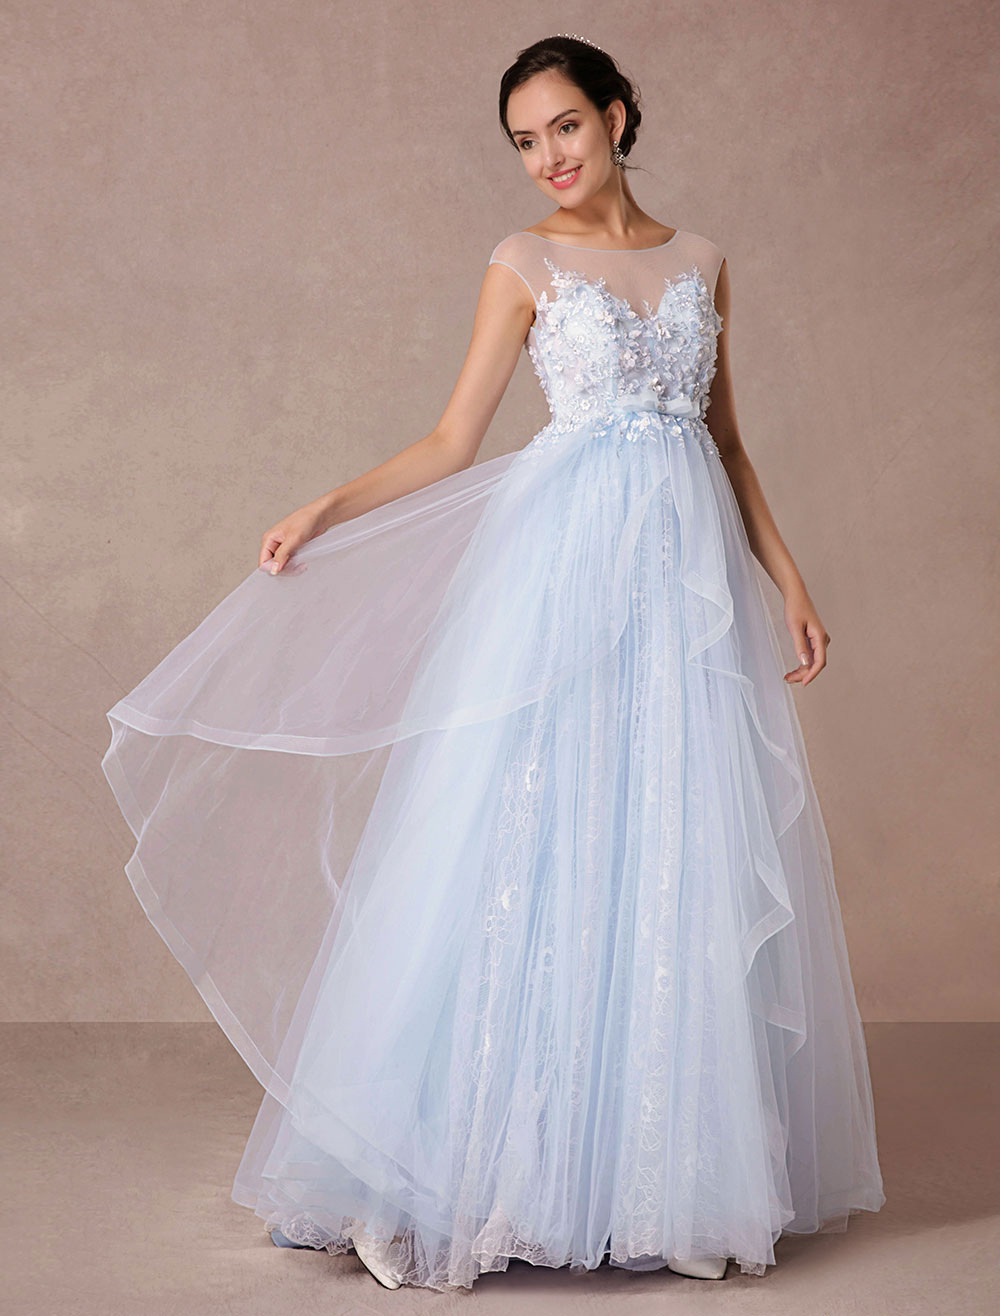 Blue Lace Wedding Dress Court Train Illusion Bridal Gown Applique 3D Flowers Luxury Evening Dress (Black Wedding Dress) photo